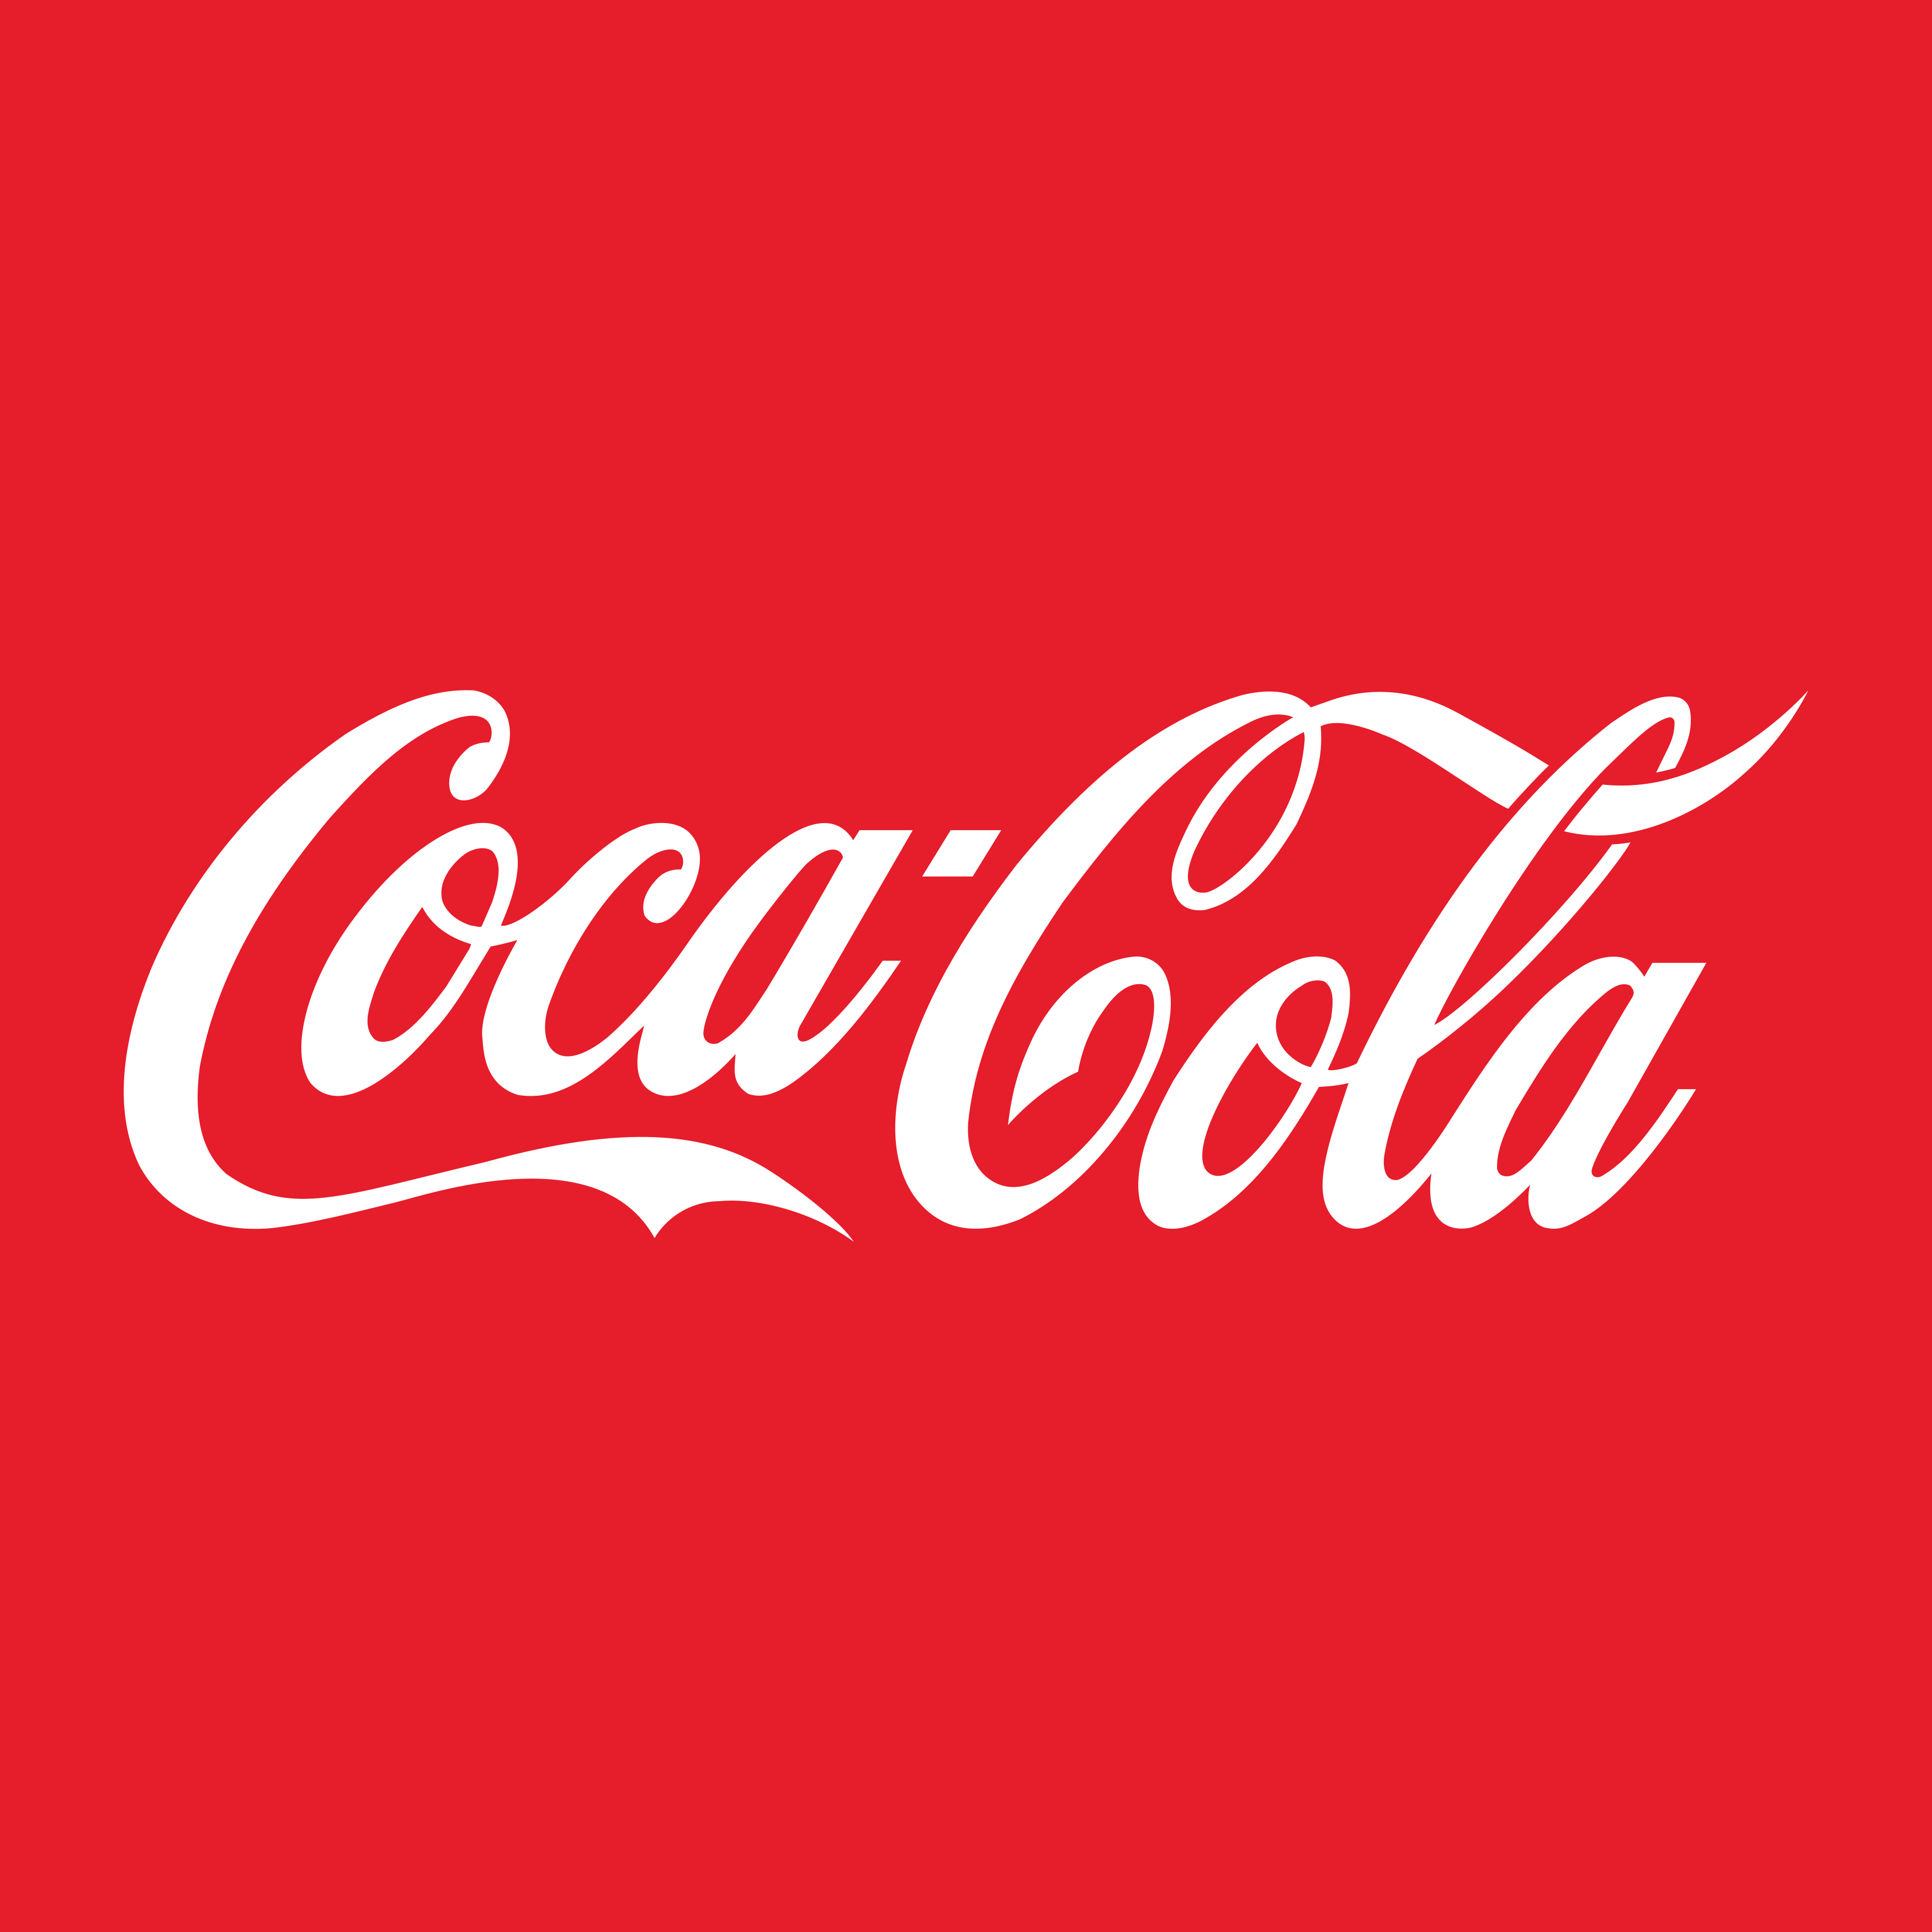 coca cola logo 2 - Coca-Cola Logo